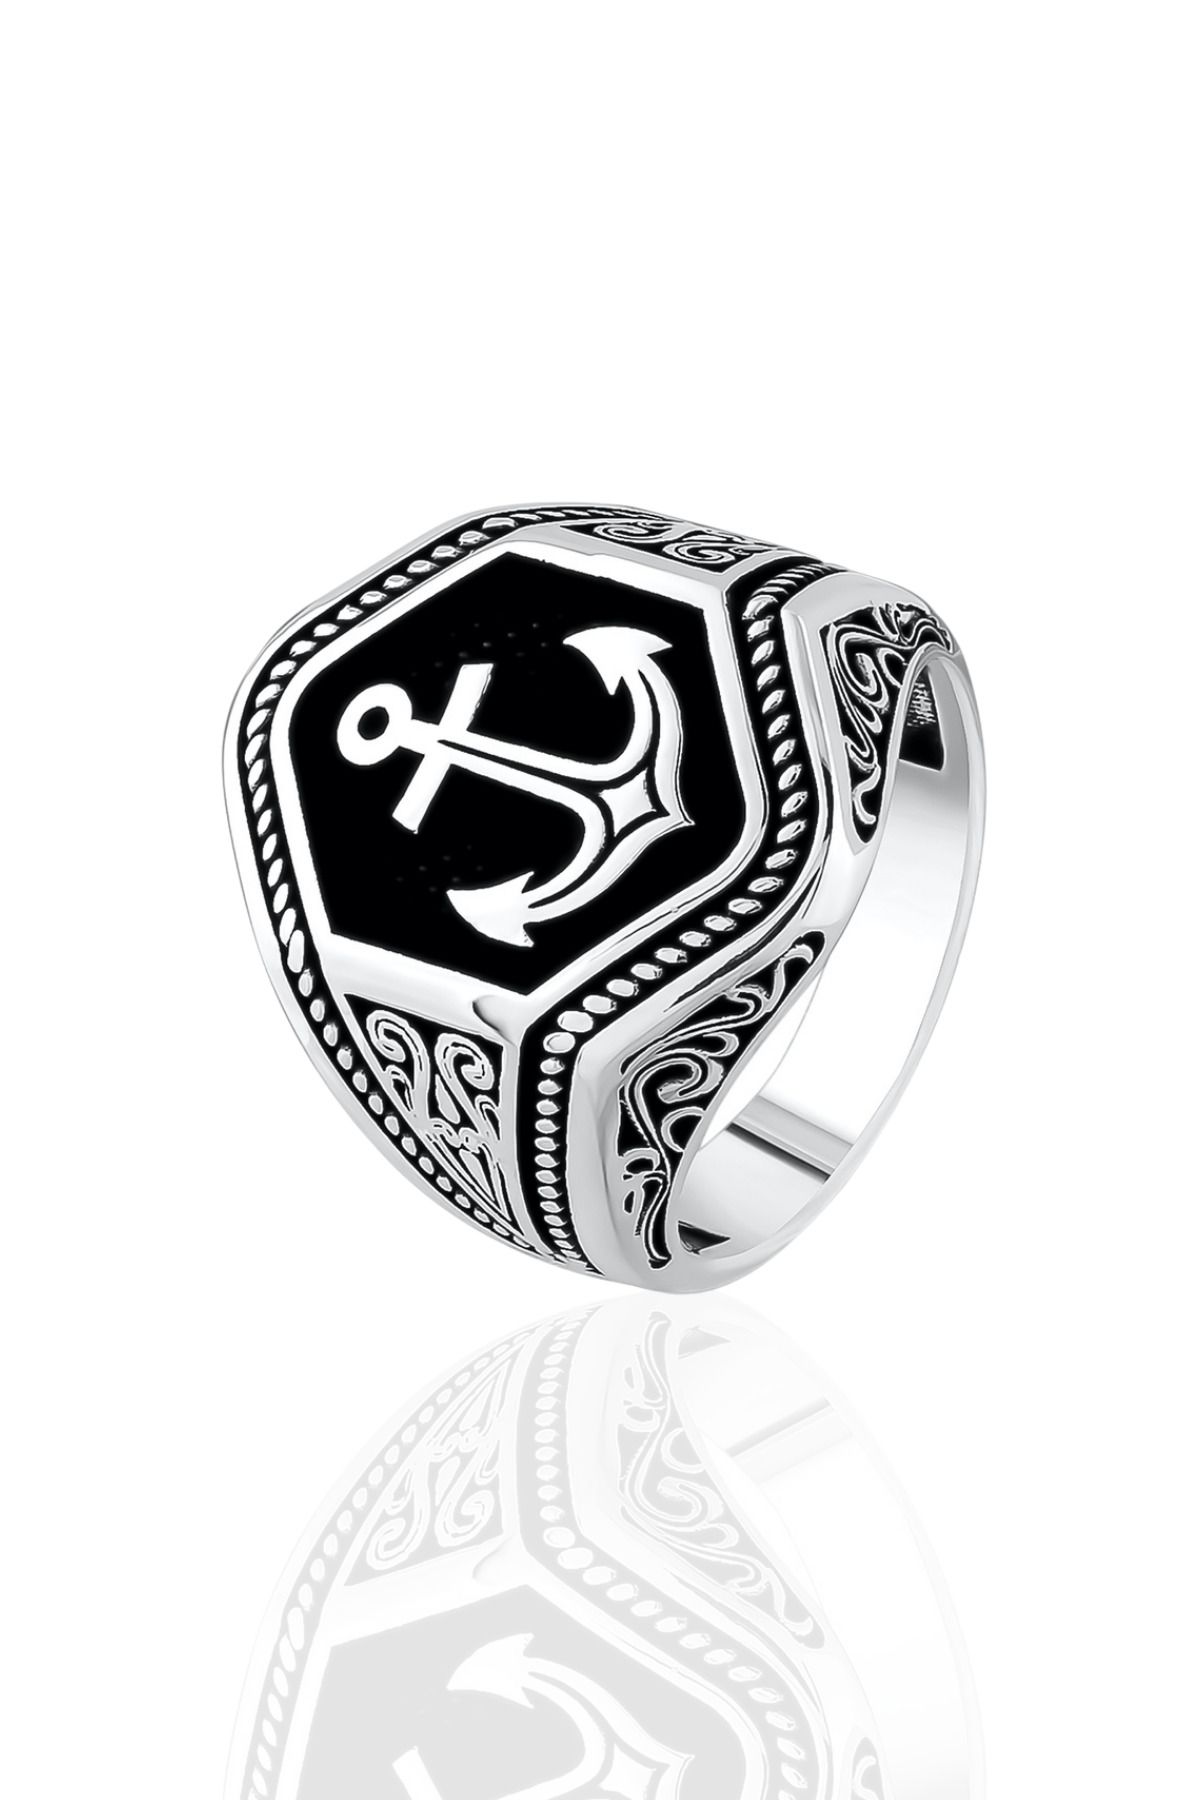 Ring Of The King Denizci Çapası 925 Ayar Gümüş Erkek Yüzük